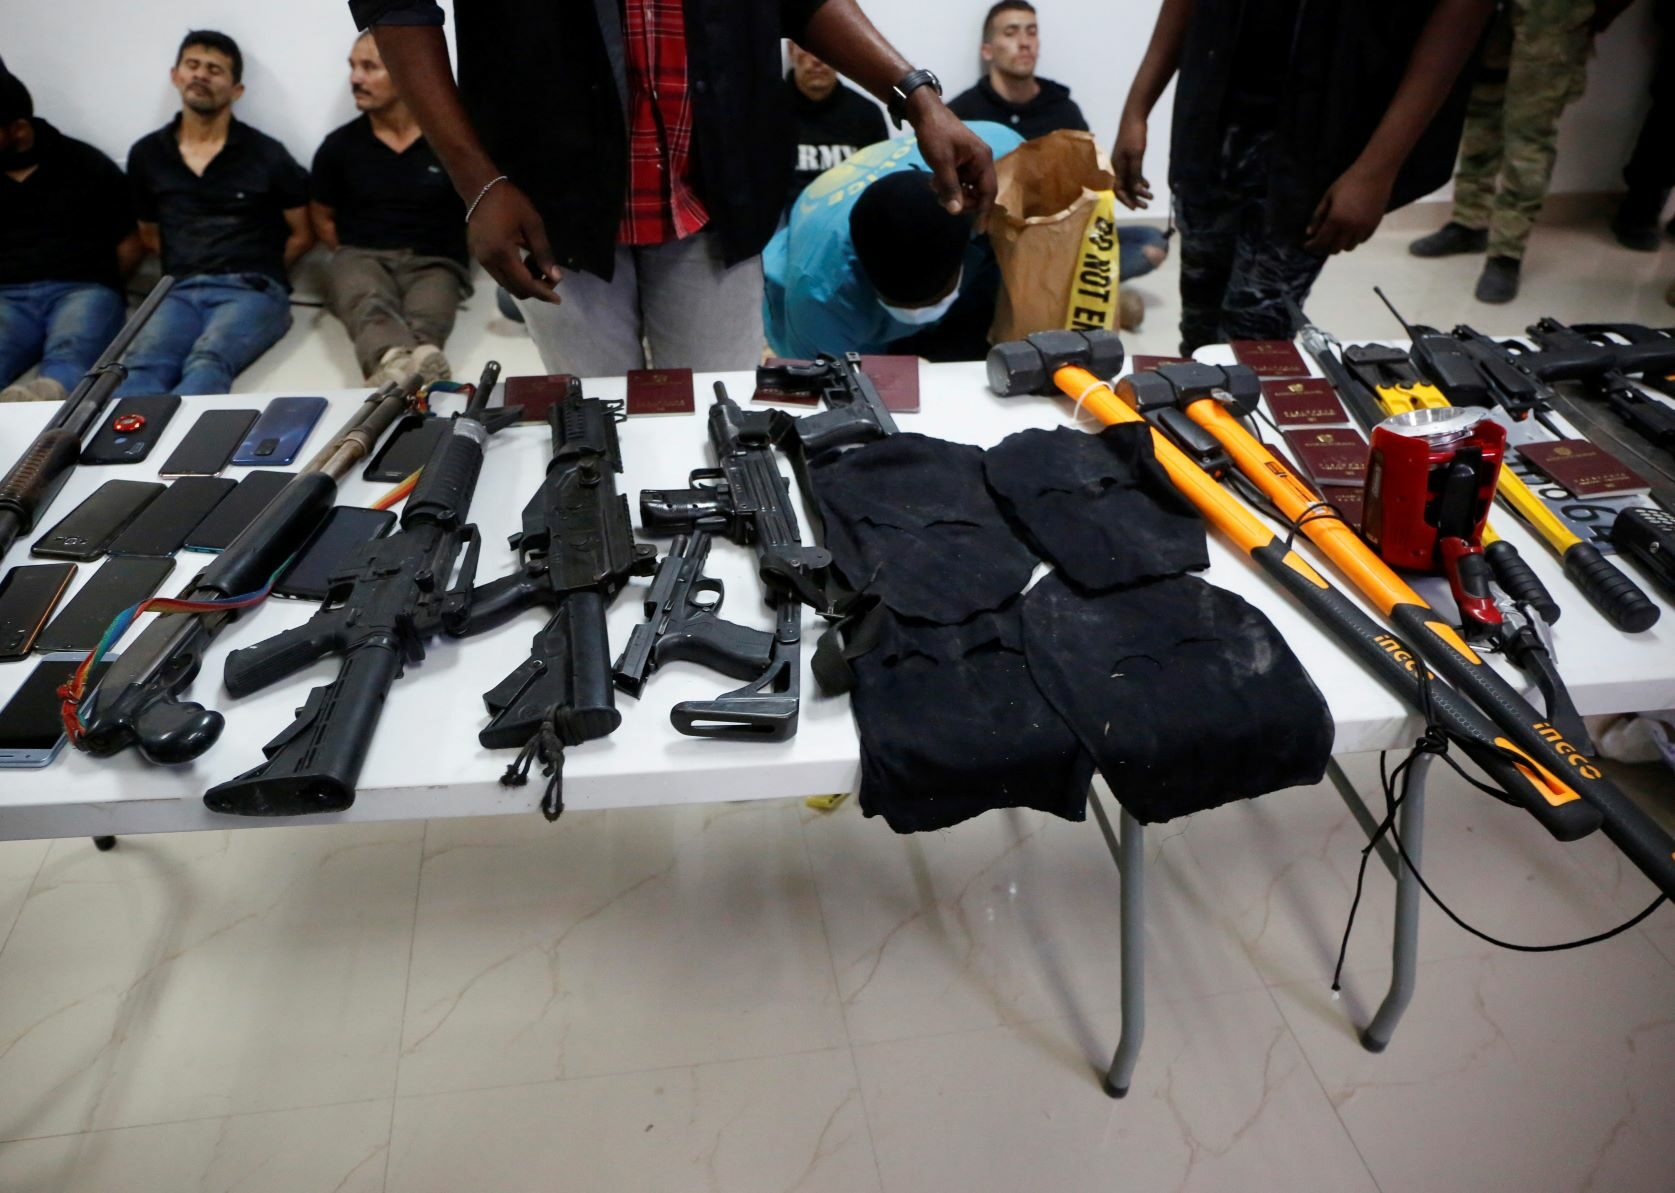 เฮติแถลงผลจับ ทีมลอบสังหารปธน. พร้อมอาวุธครบมือ ชี้เป็นนักฆ่าโคลอมเบีย-อเมริกัน